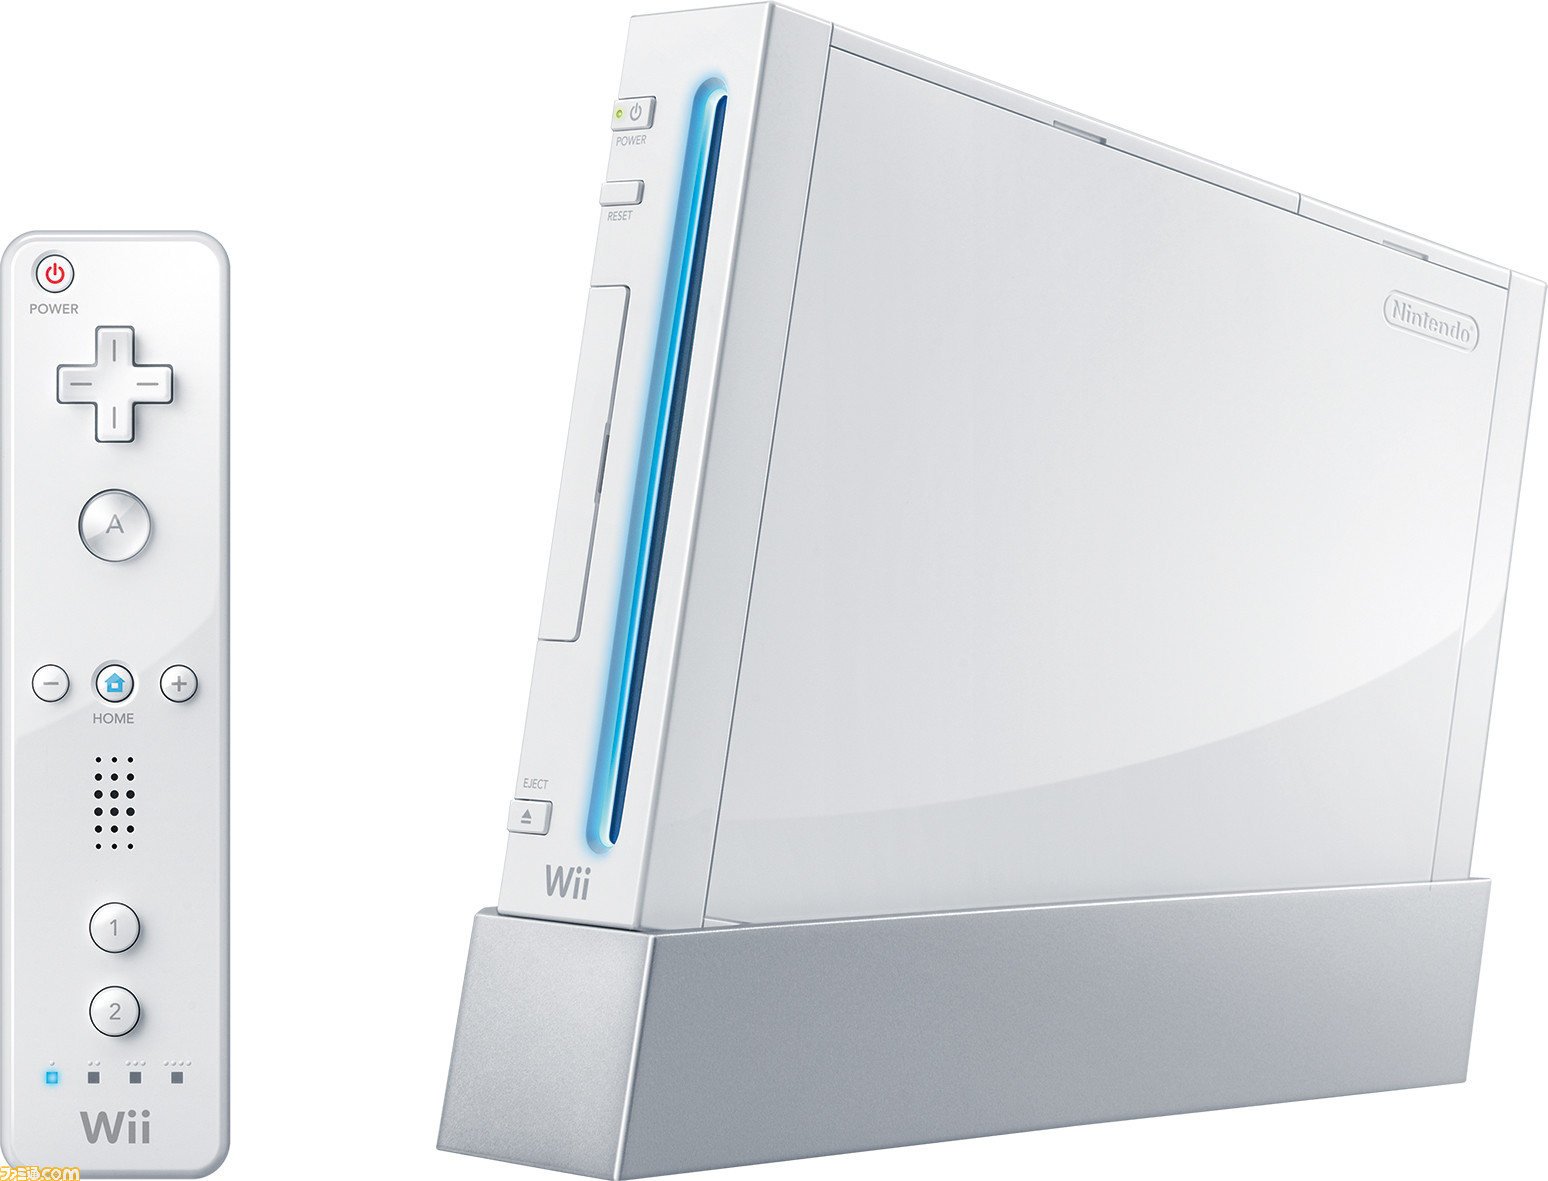 Wiiが発売された日。Wiiリモコンによる直感的操作が発明だった独創的なマシン。ふだんゲームをしない層にも『Wii スポーツ』や『Wii  Fit』が大流行【今日は何の日？】 | ゲーム・エンタメ最新情報のファミ通.com